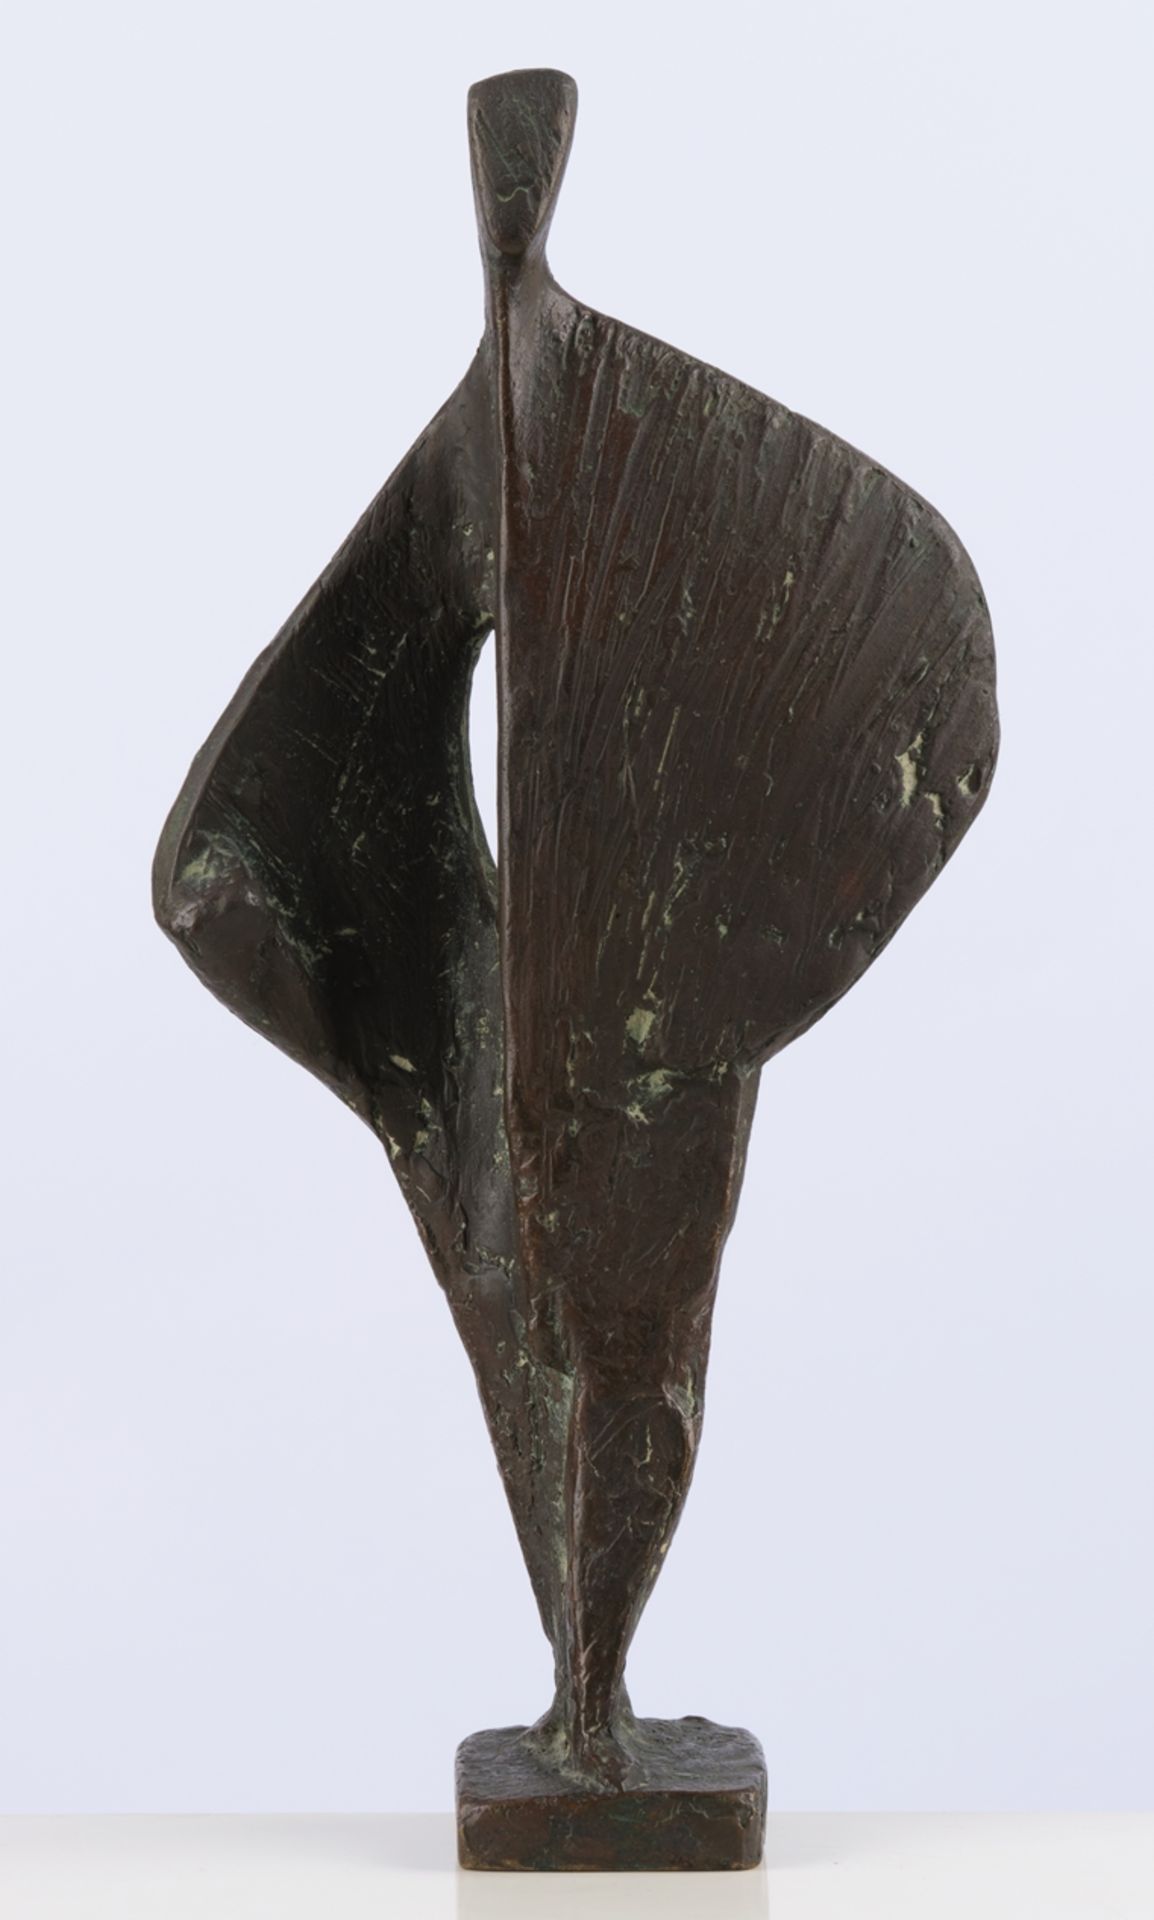 Bronze, braun patiniert, "Engel", unleserlich auf der Plinthe monogrammiert, 32.3 cm hoch